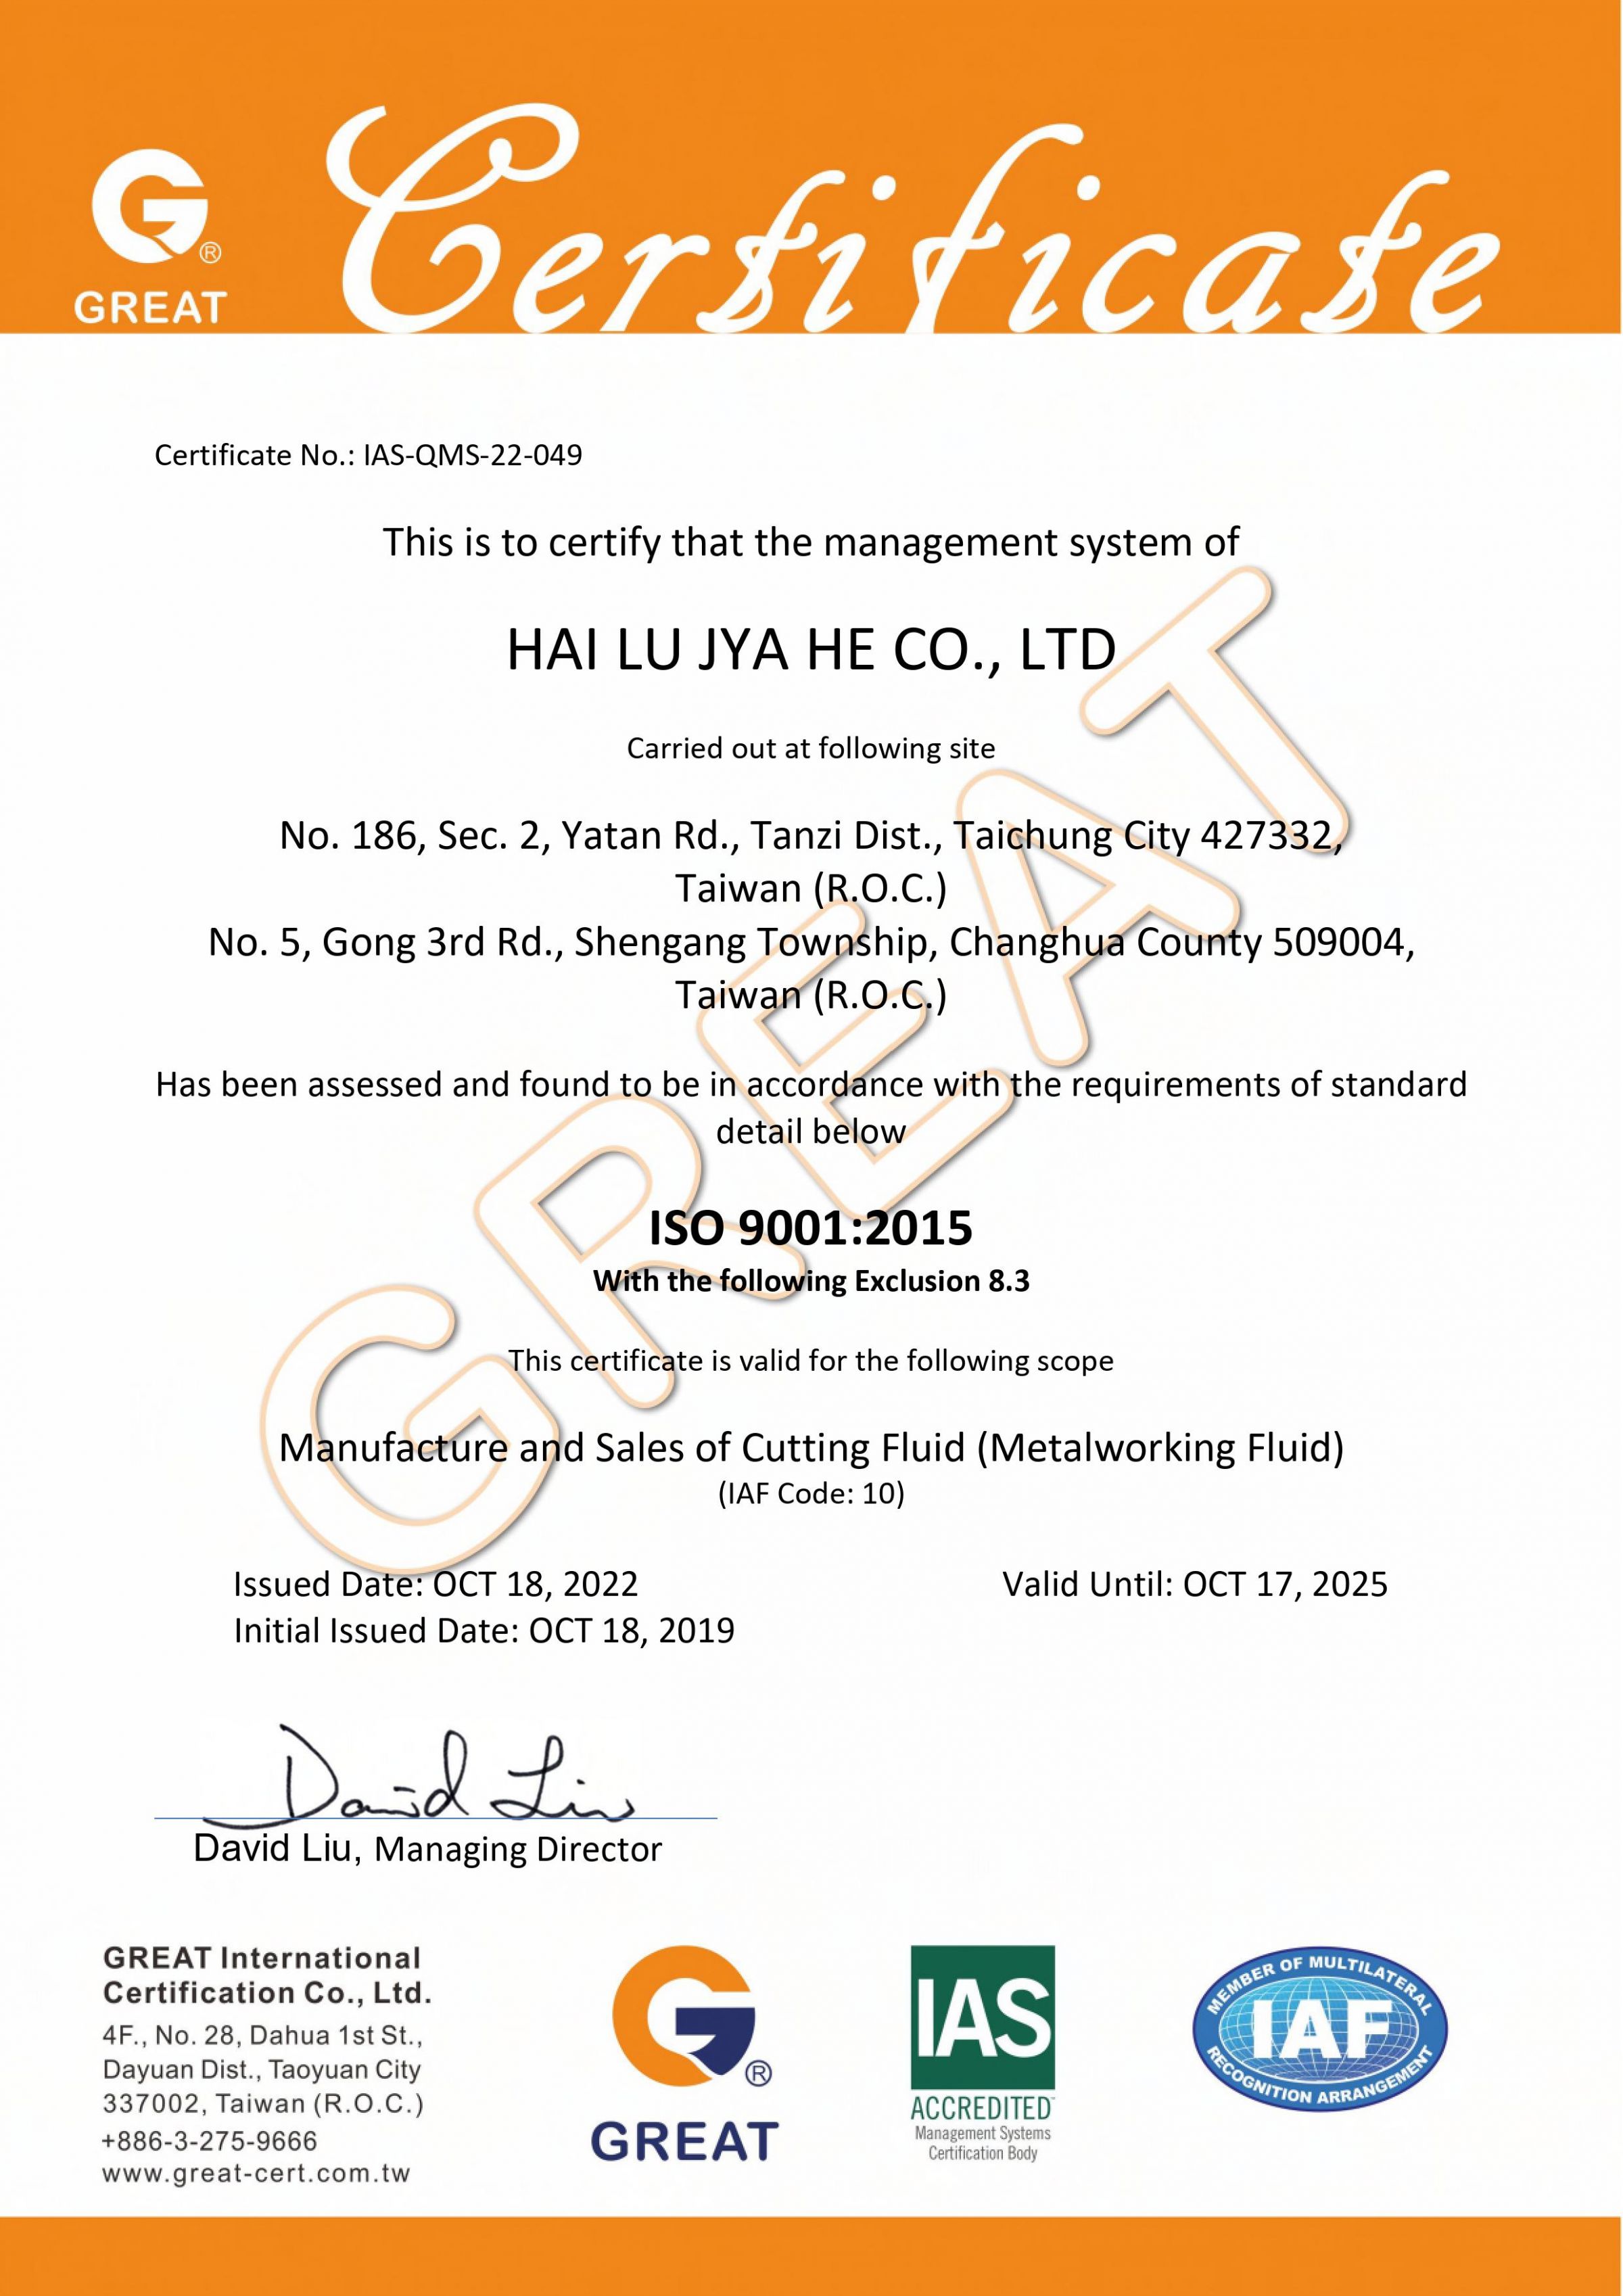 ISO 9001:2015（品質管理システム）